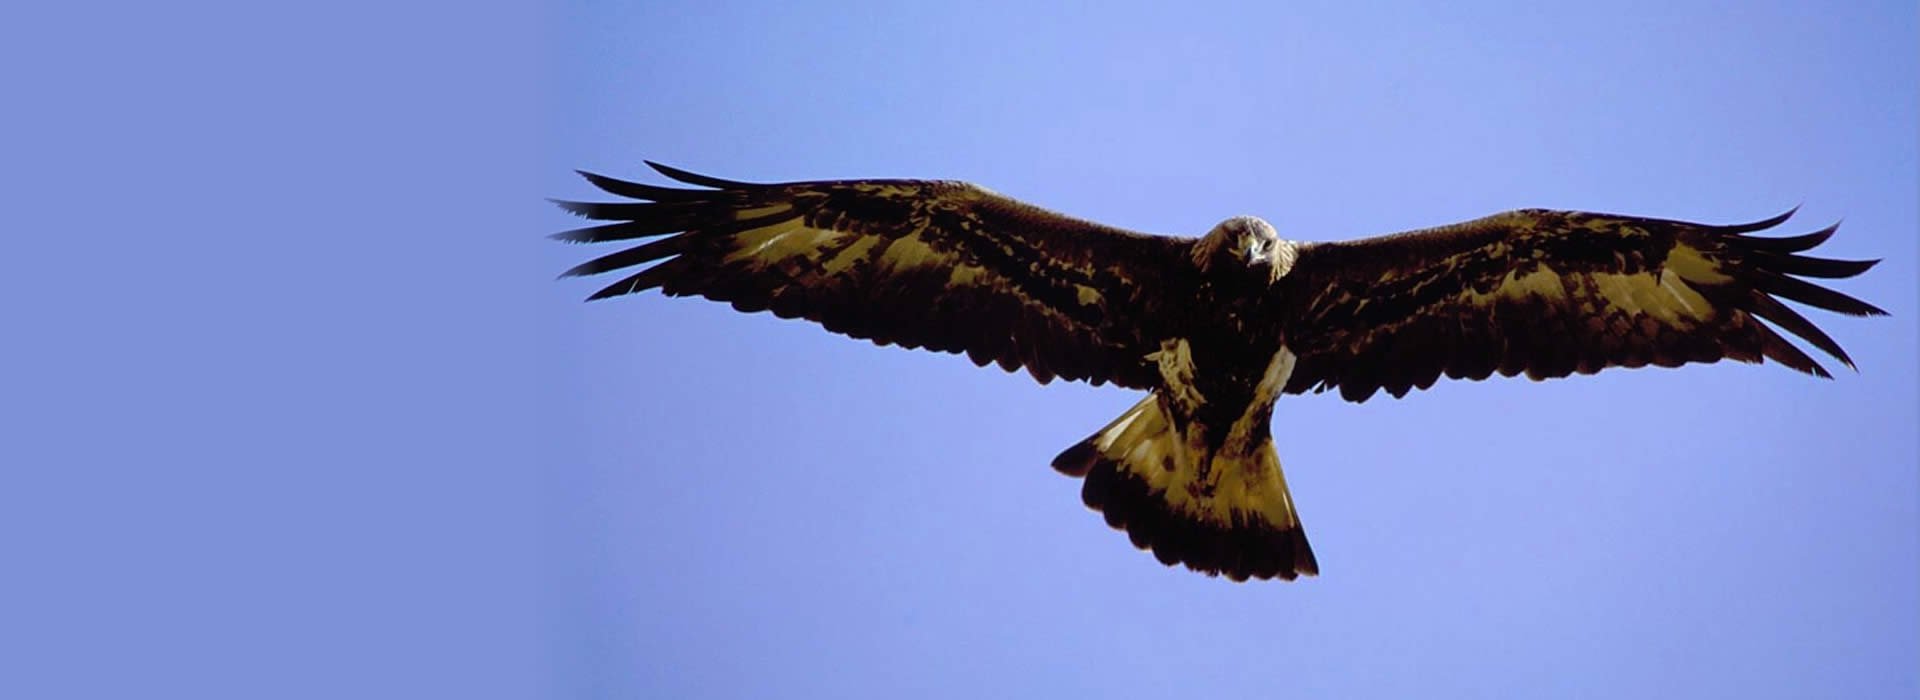 A soaring Golden Eagle